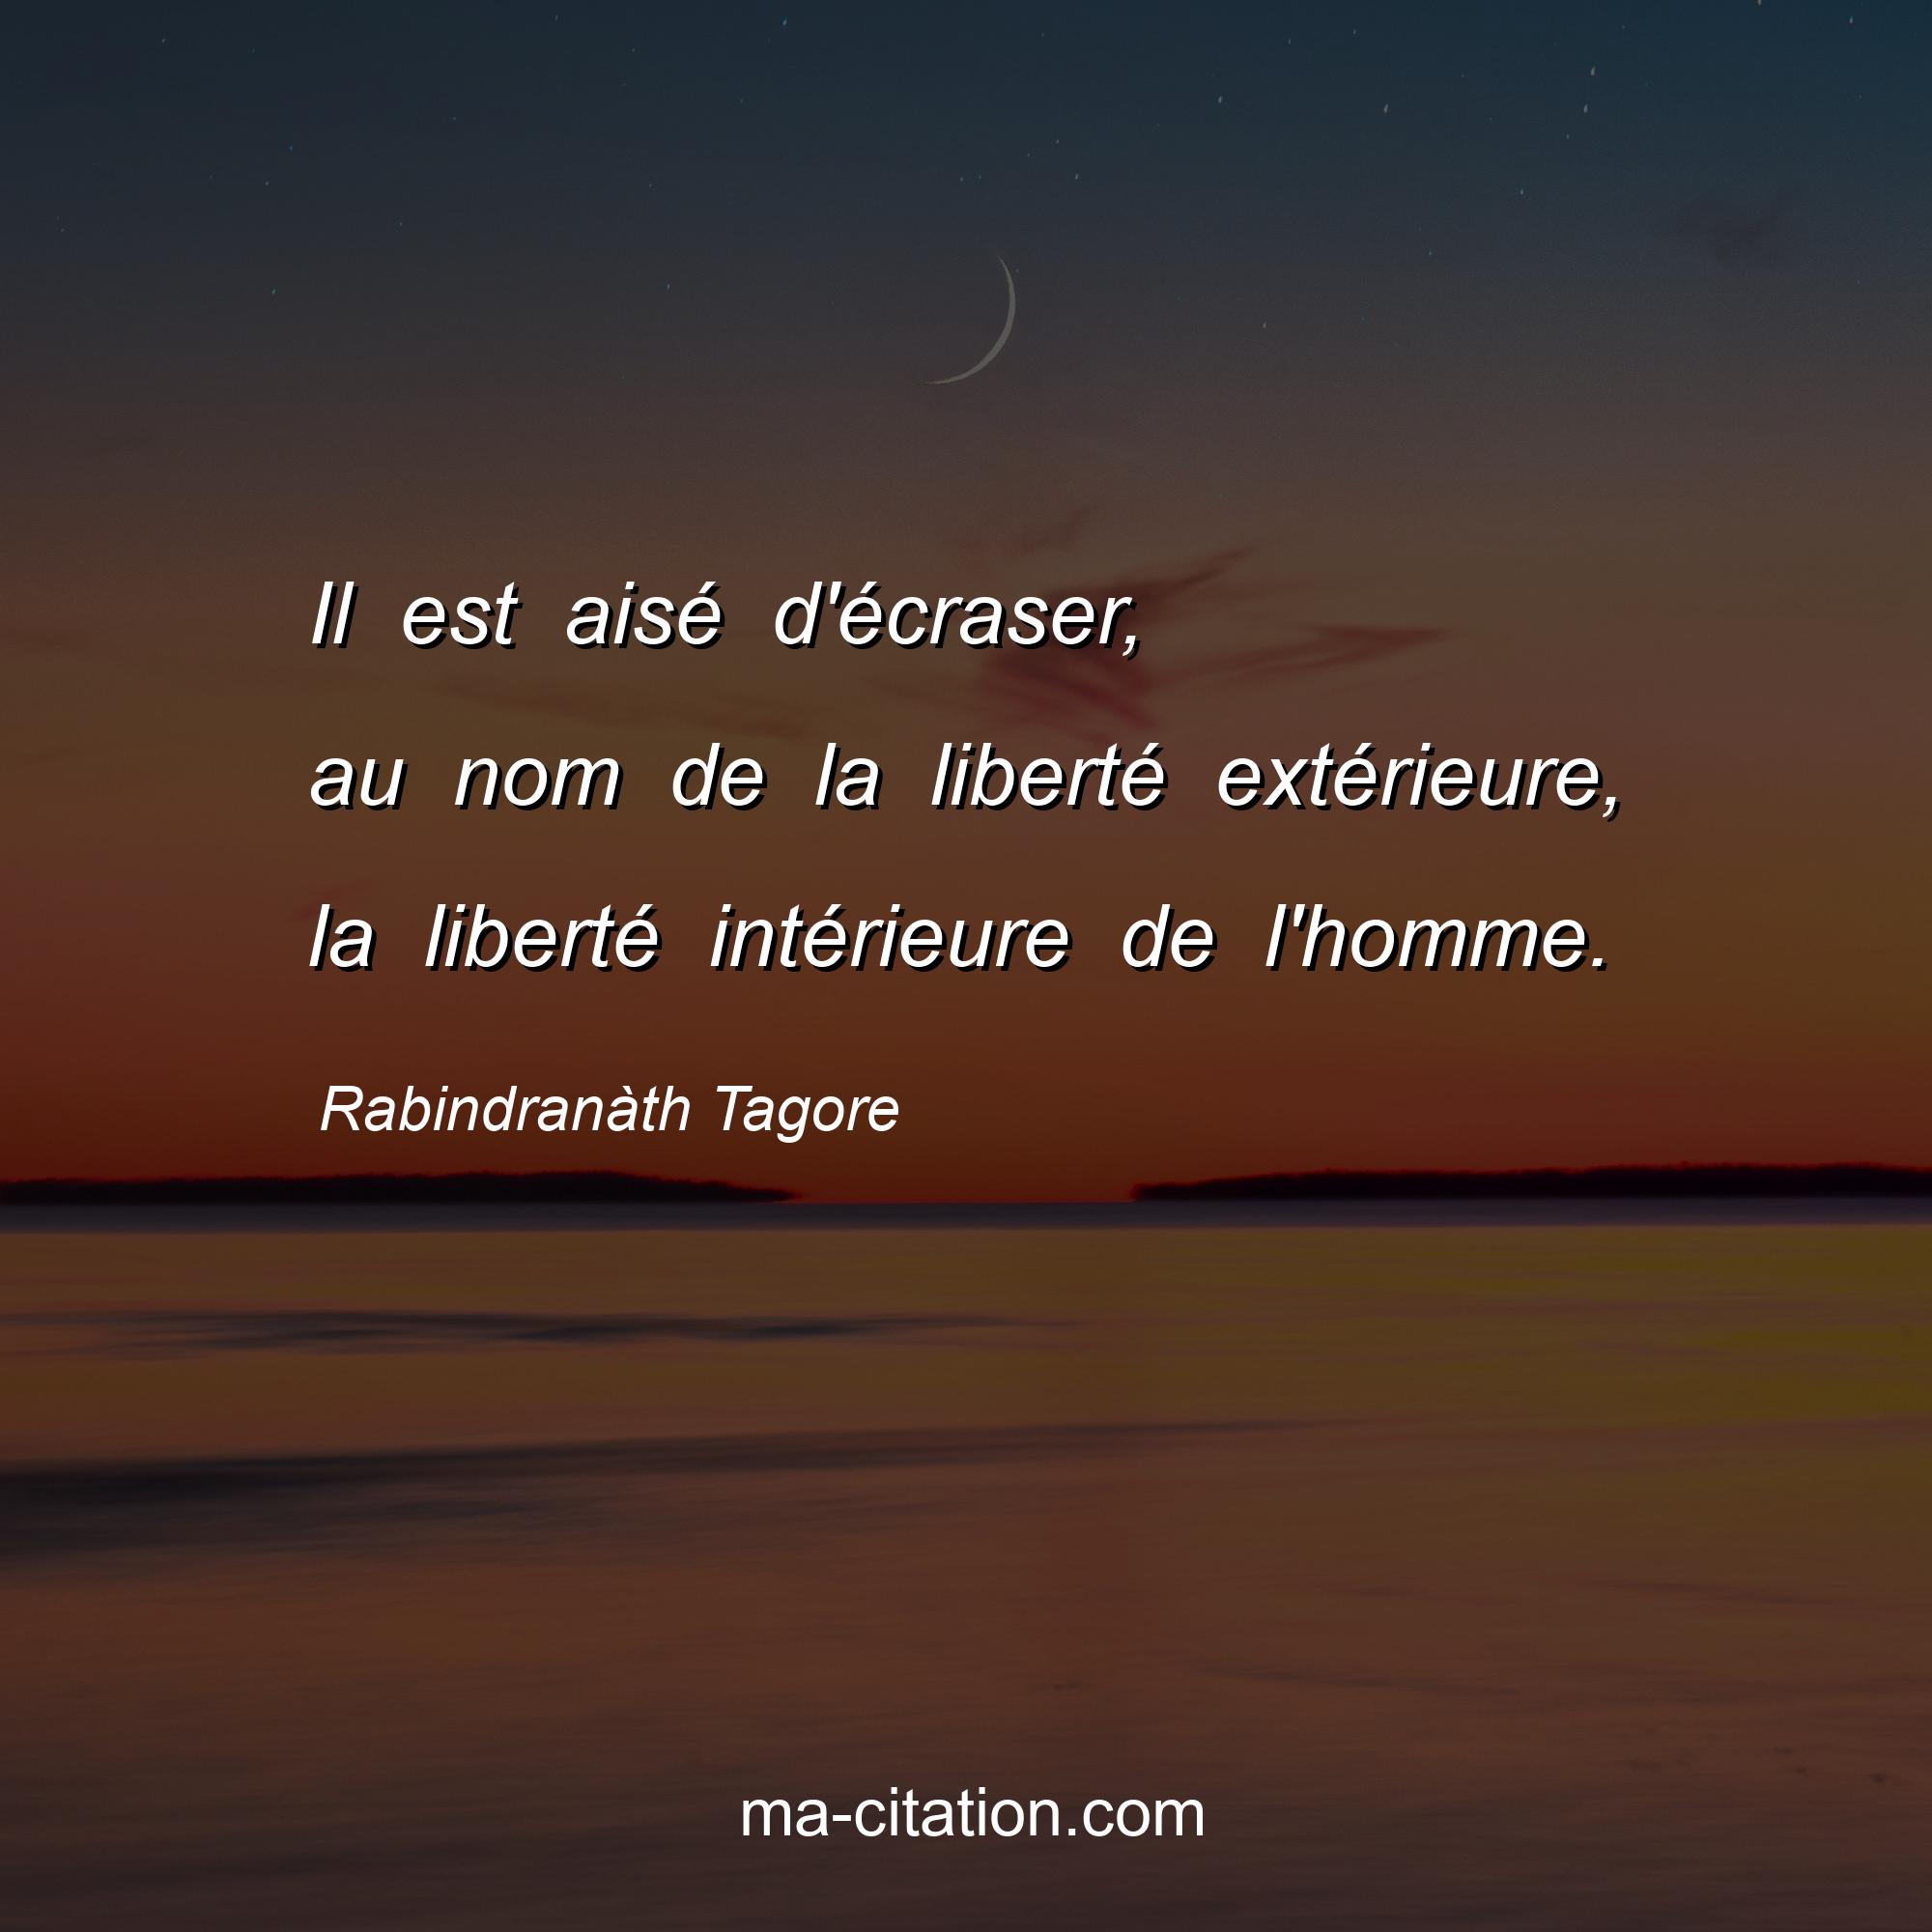 Rabindranàth Tagore : Il est aisé d'écraser, au nom de la liberté extérieure, la liberté intérieure de l'homme.